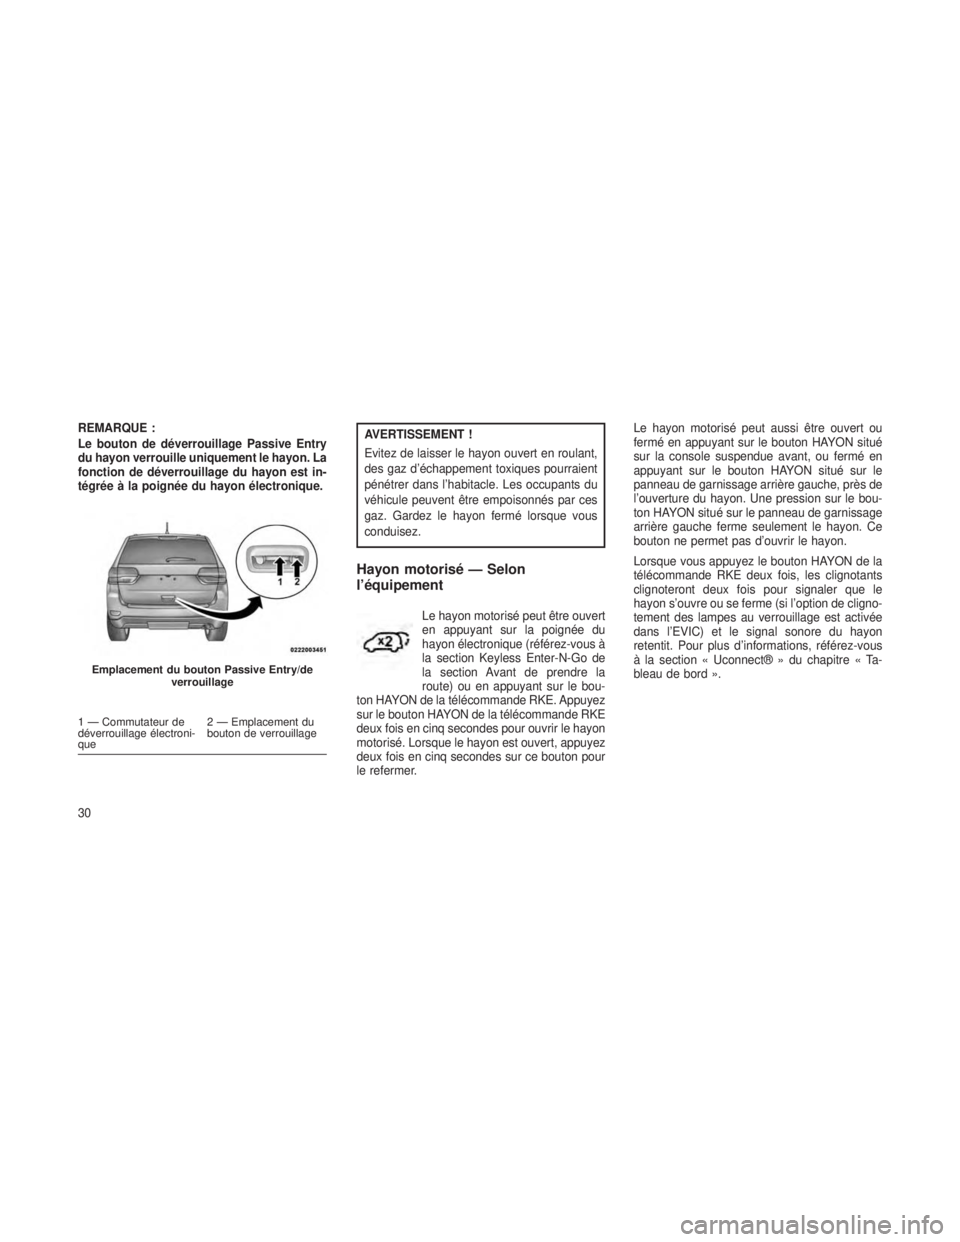 JEEP GRAND CHEROKEE 2013  Notice dentretien (in French) REMARQUE :
Le bouton de déverrouillage Passive Entry
du hayon verrouille uniquement le hayon. La
fonction de déverrouillage du hayon est in-
tégrée à la poignée du hayon électronique.AVERTISSEM